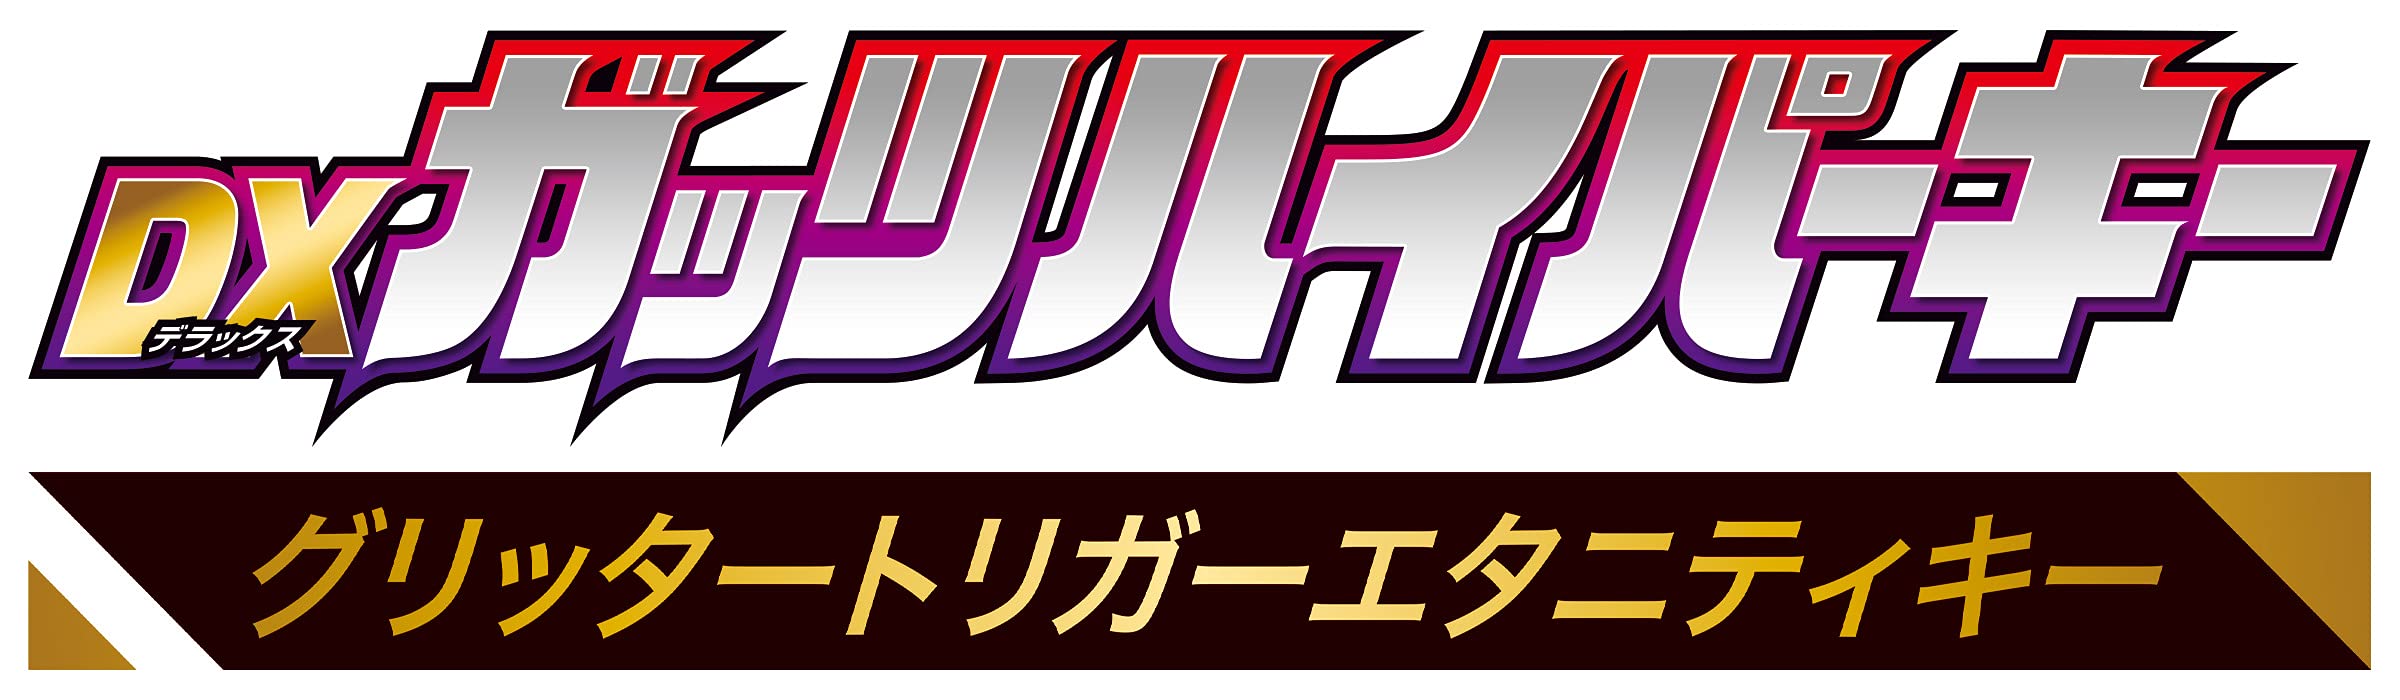 Bandai DX Guts Hyper Clé Ultraman Glitter Trigger Eternity Key DX Guts Hyper Clé